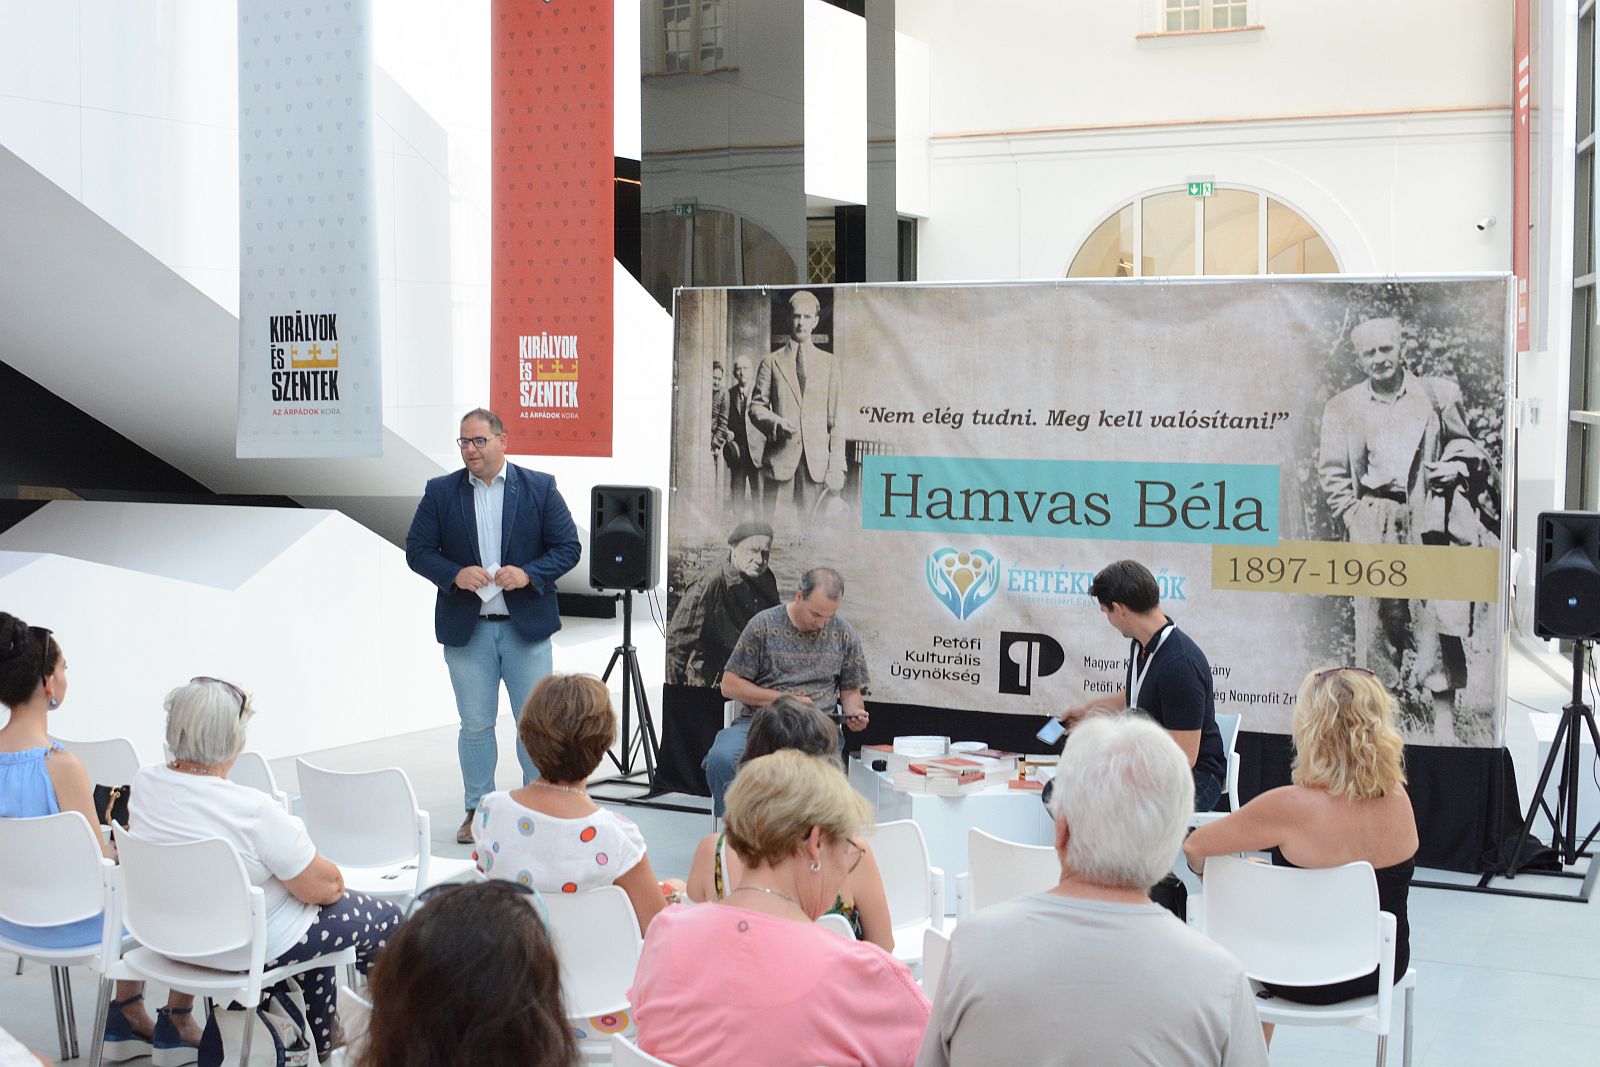 Beszélgetés Hamvas Béla életéről és műveiről a háború vonatkozásában